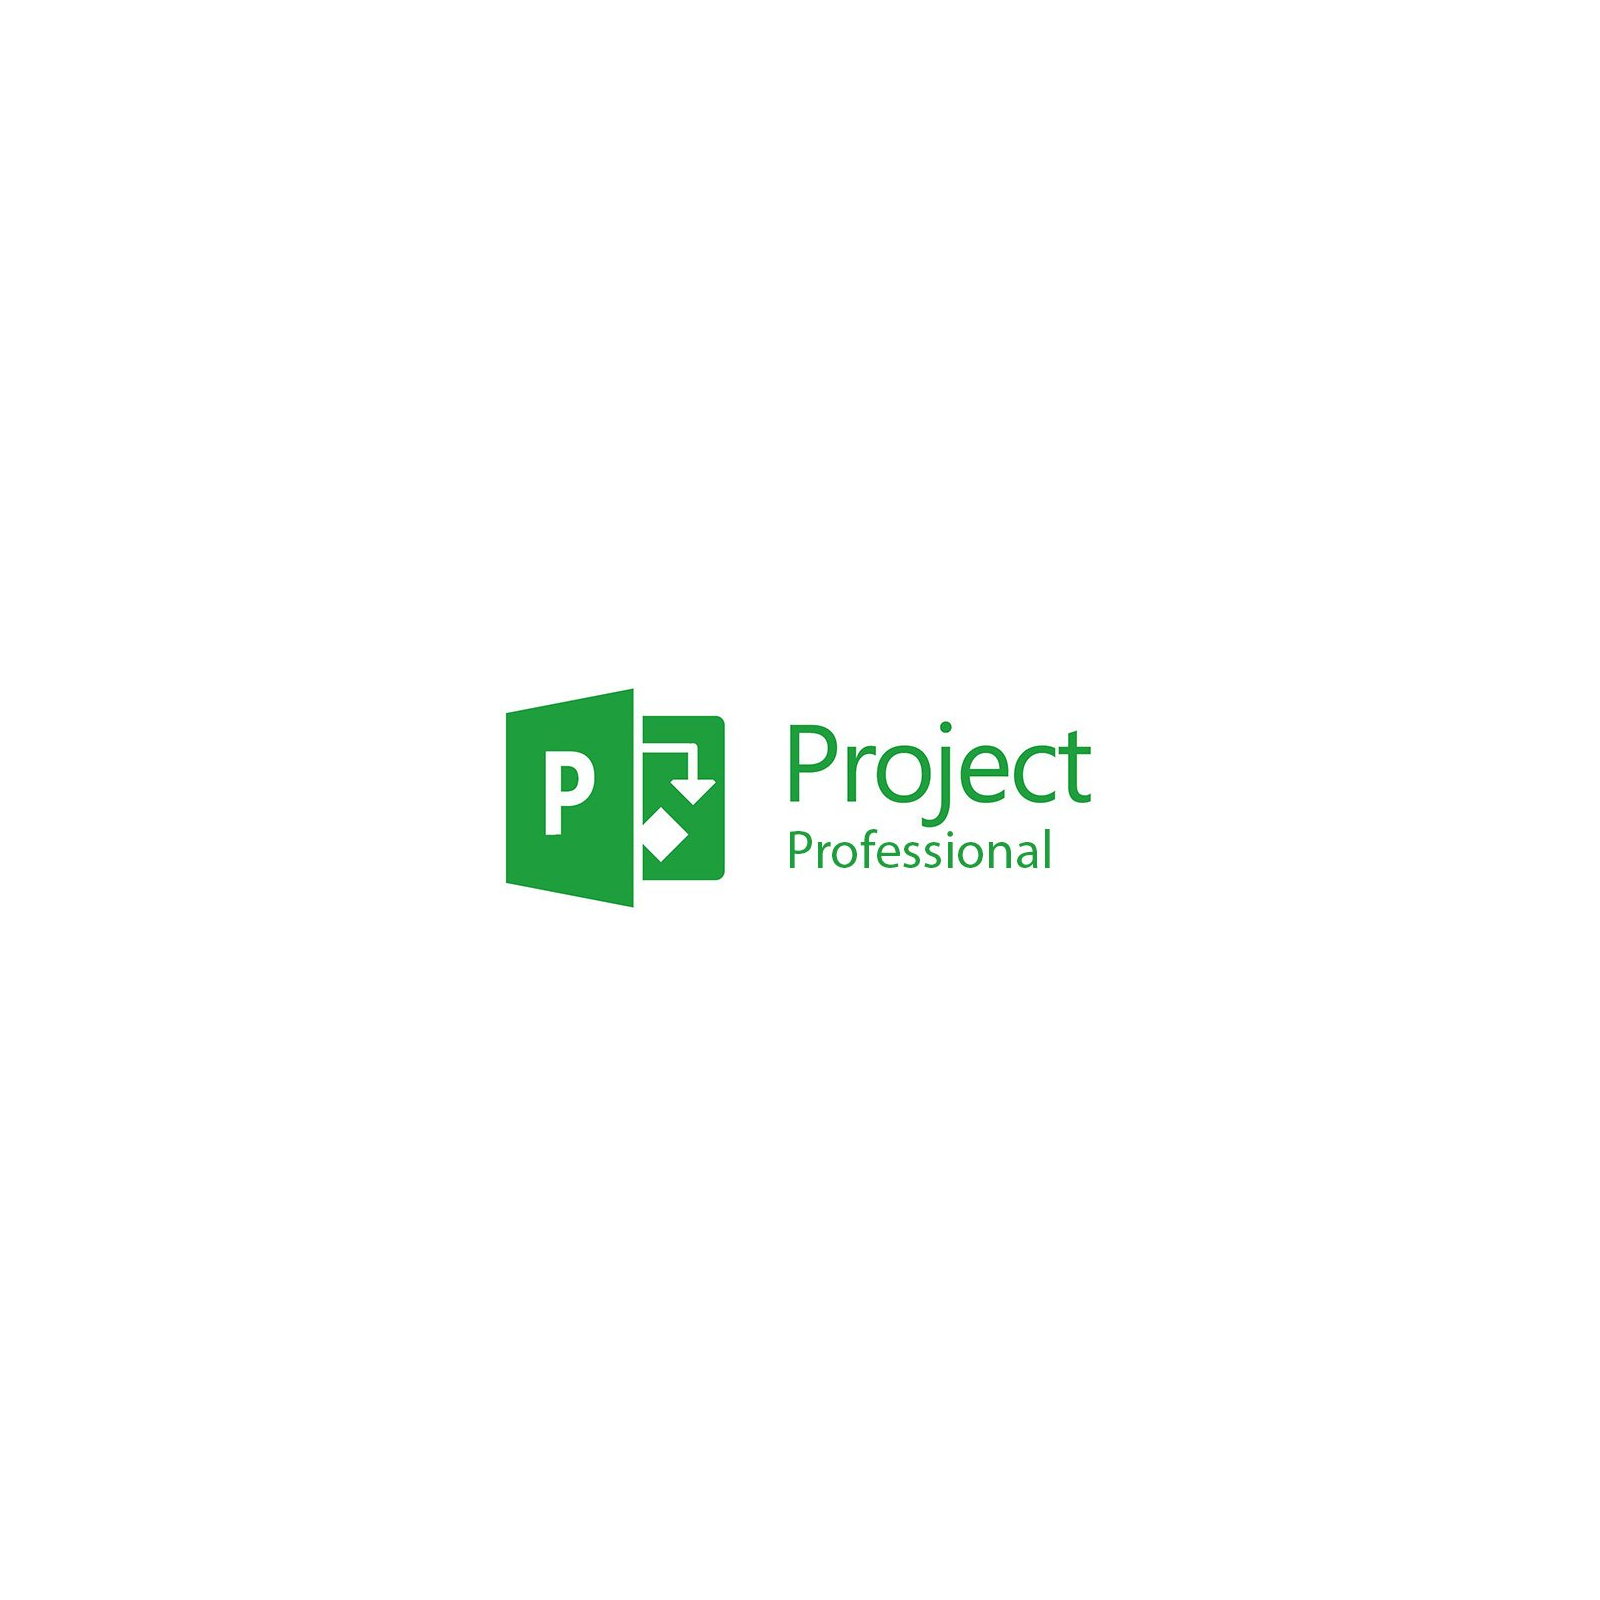 Програмна продукція Microsoft PrjctPro 2016 RUS OLP NL Acdmc w1PrjctSvrCAL (H30-05607)